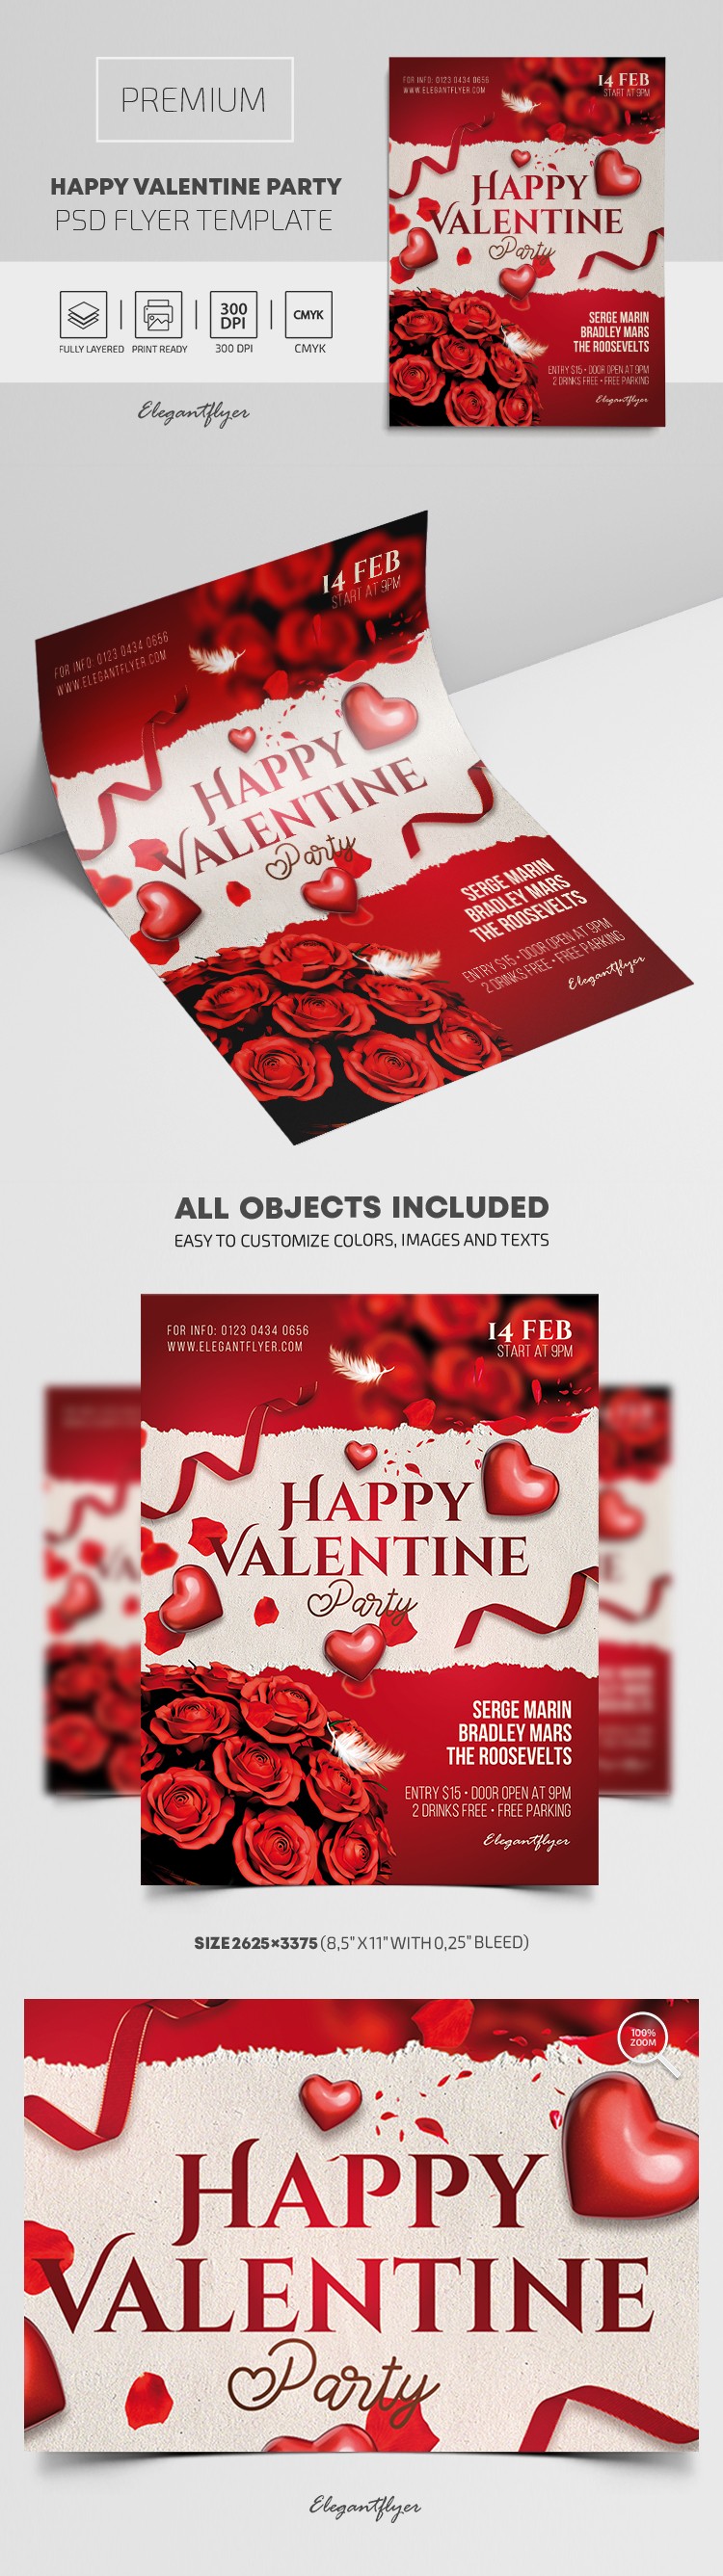 Happy Valentine Party Flyer by ElegantFlyer